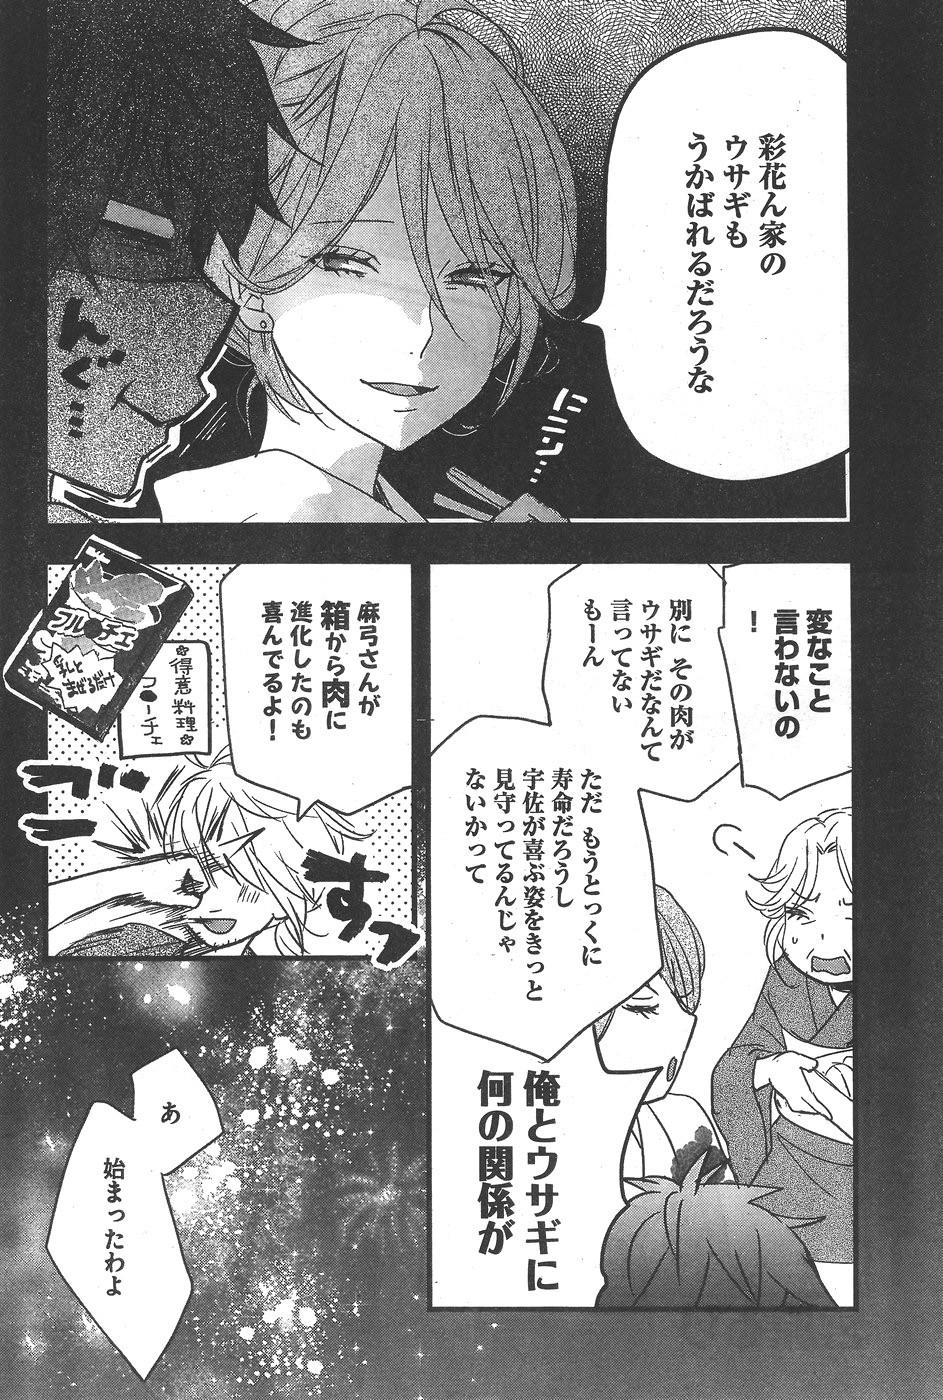 Bokura wa Minna Kawaisou - Chapter 74 - Page 2